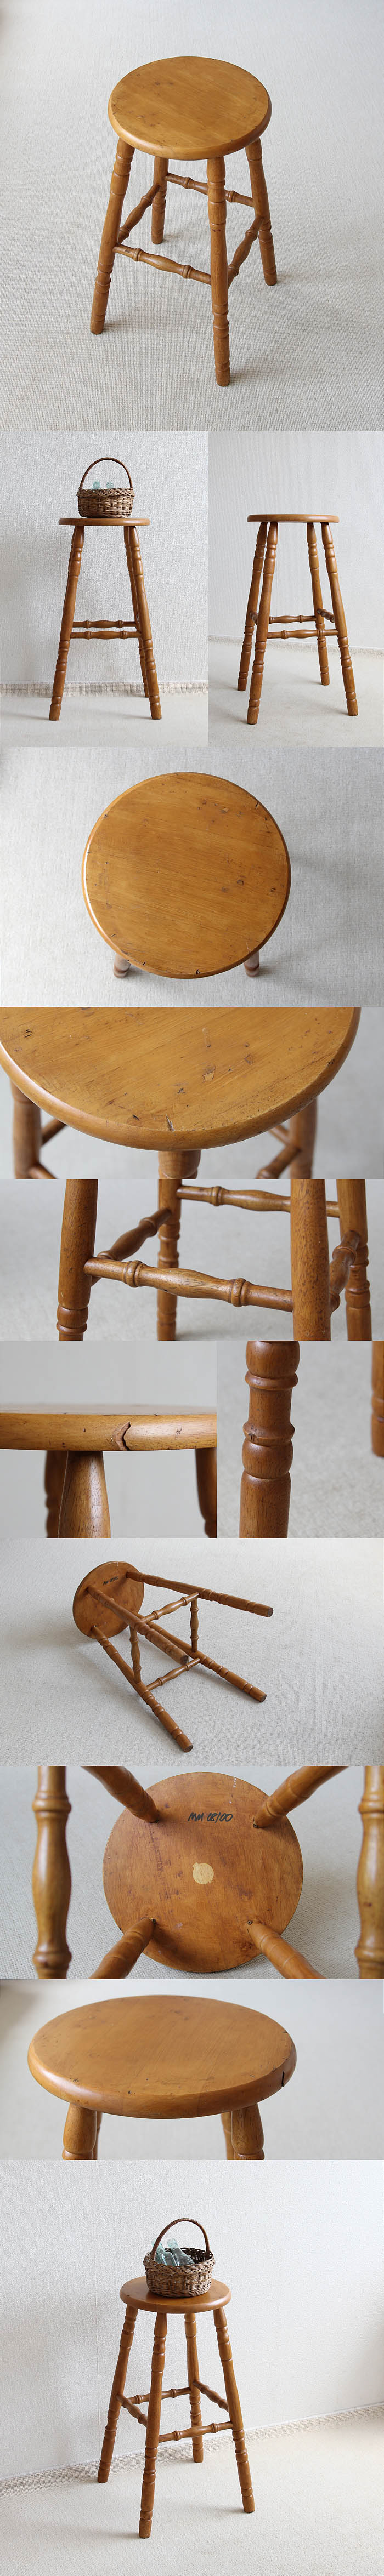 イギリス ヴィンテージ ハイスツール 木製 椅子 カウンターチェア カントリー 家具 V-303